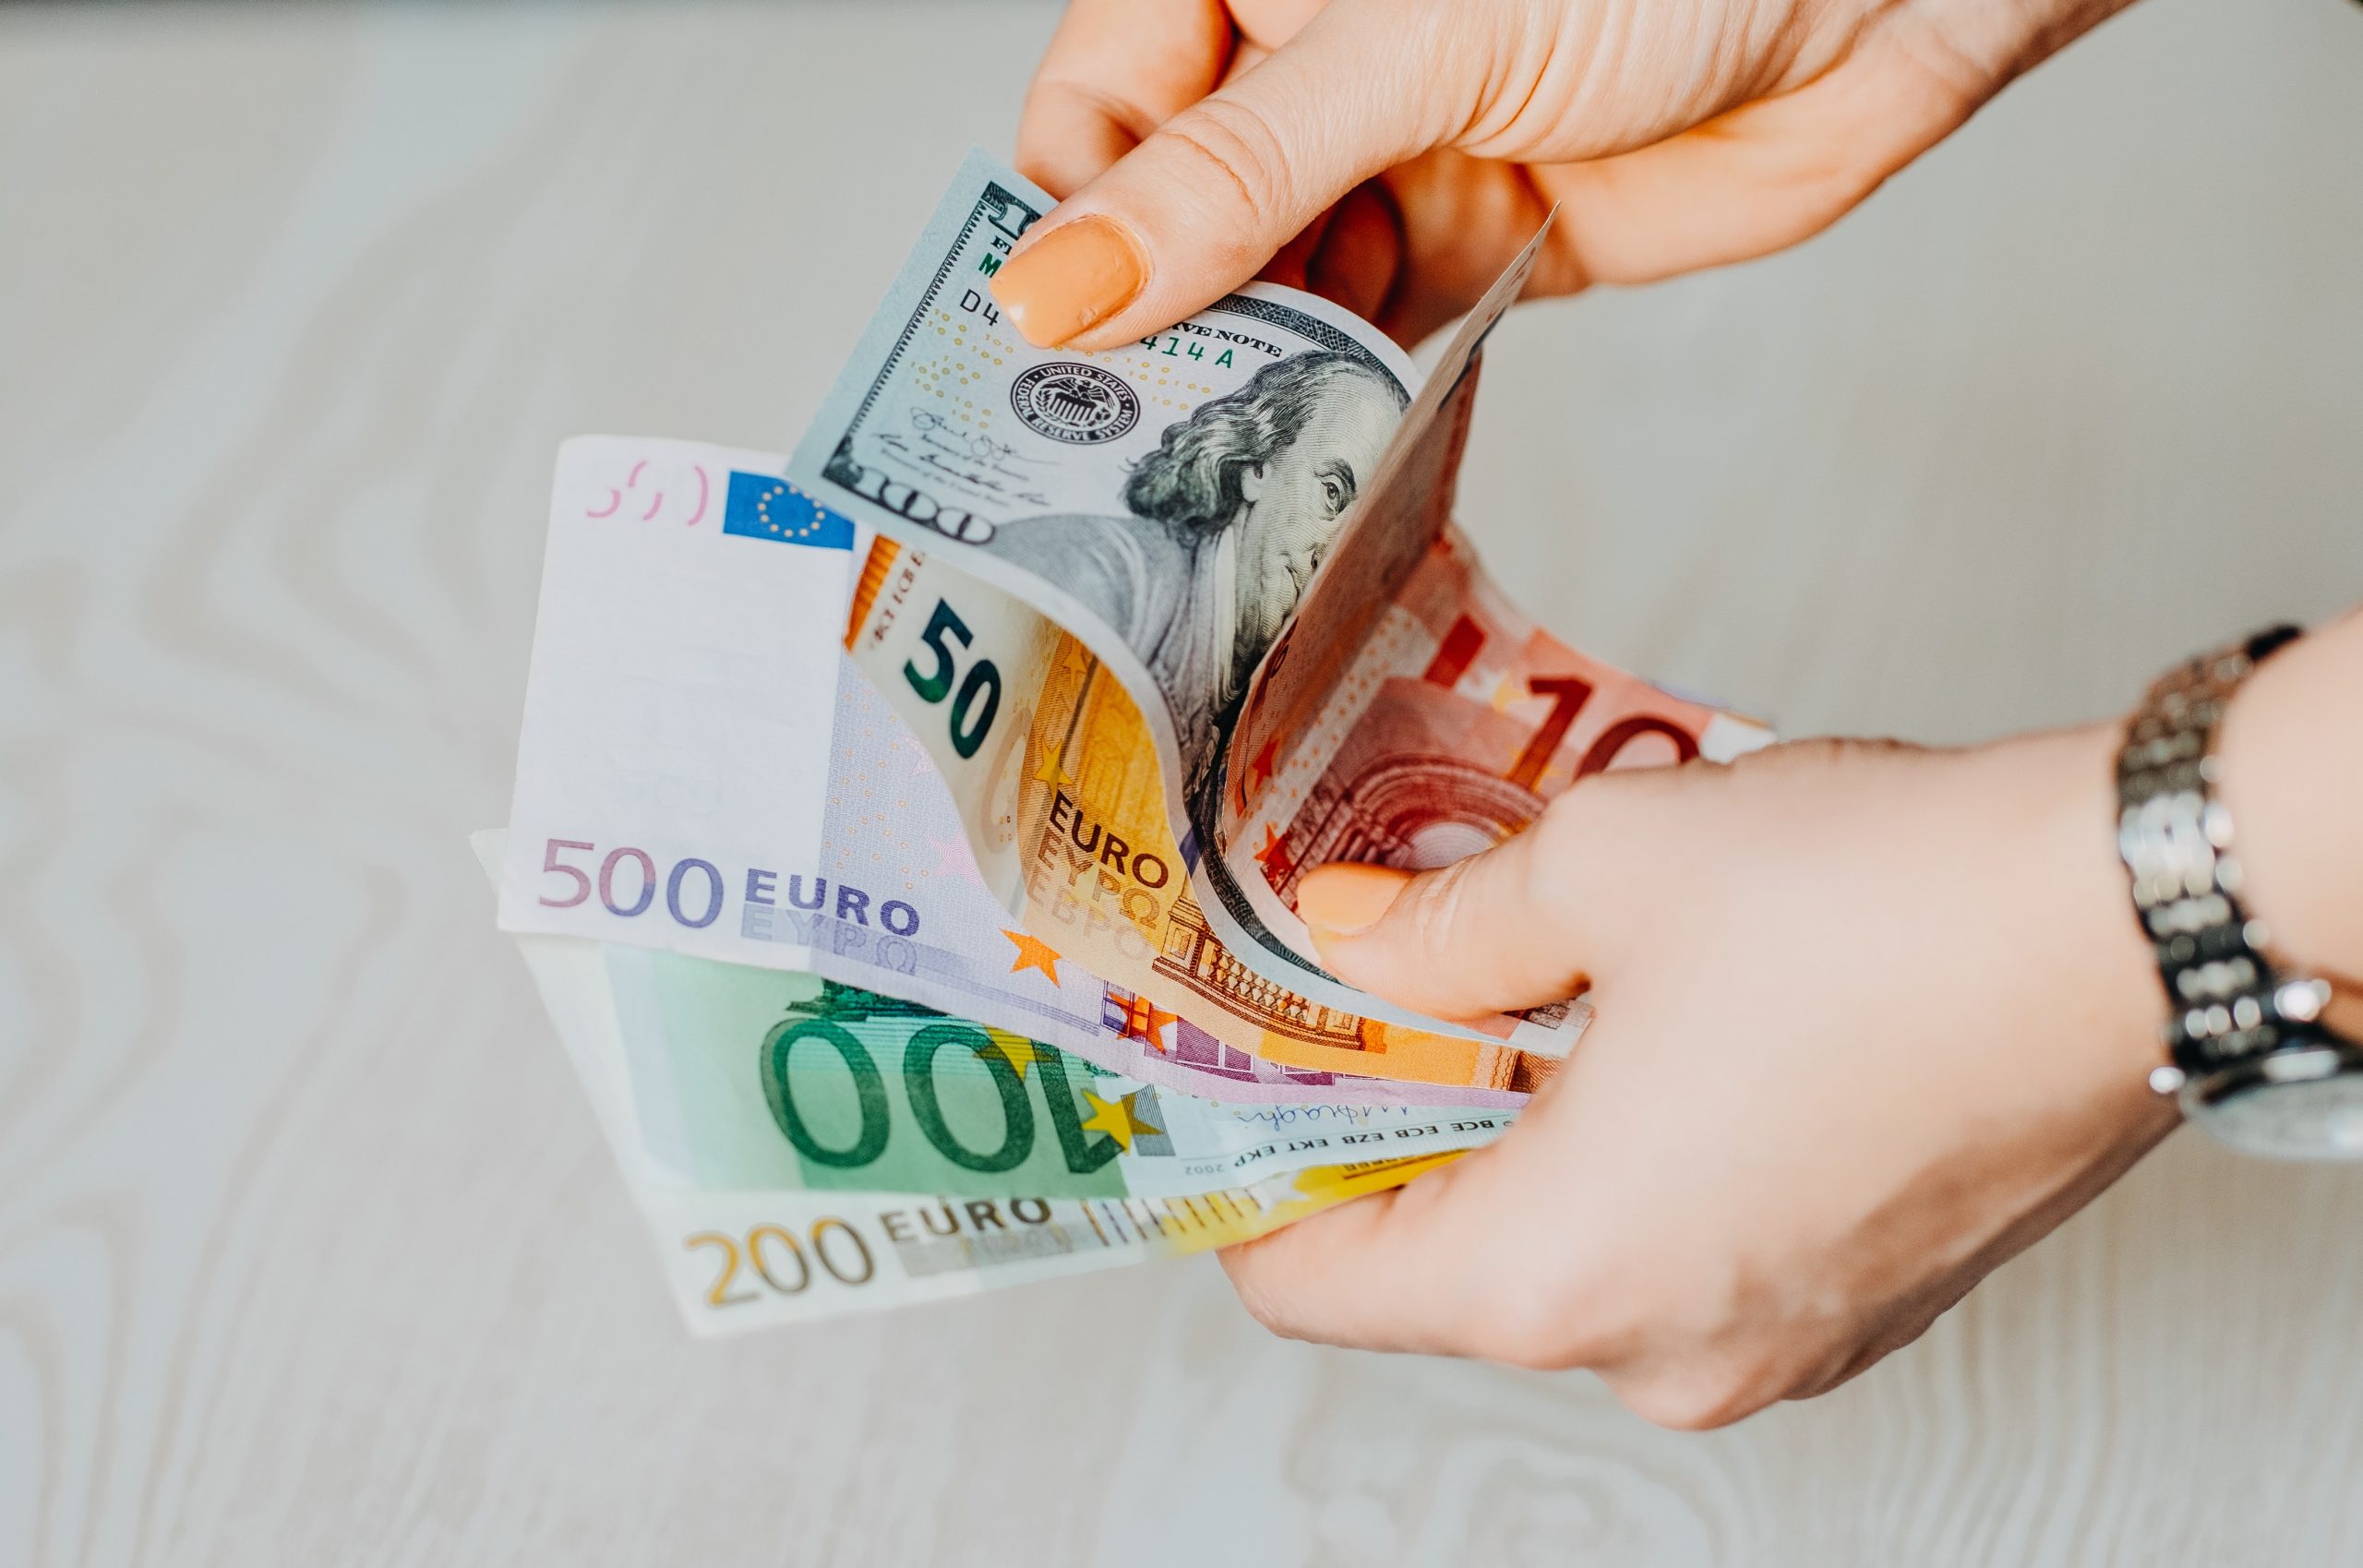 Read more about the article Dolar Ungguli Euro saat Pedagang Menunggu Keputusan Suku Bunga ECB